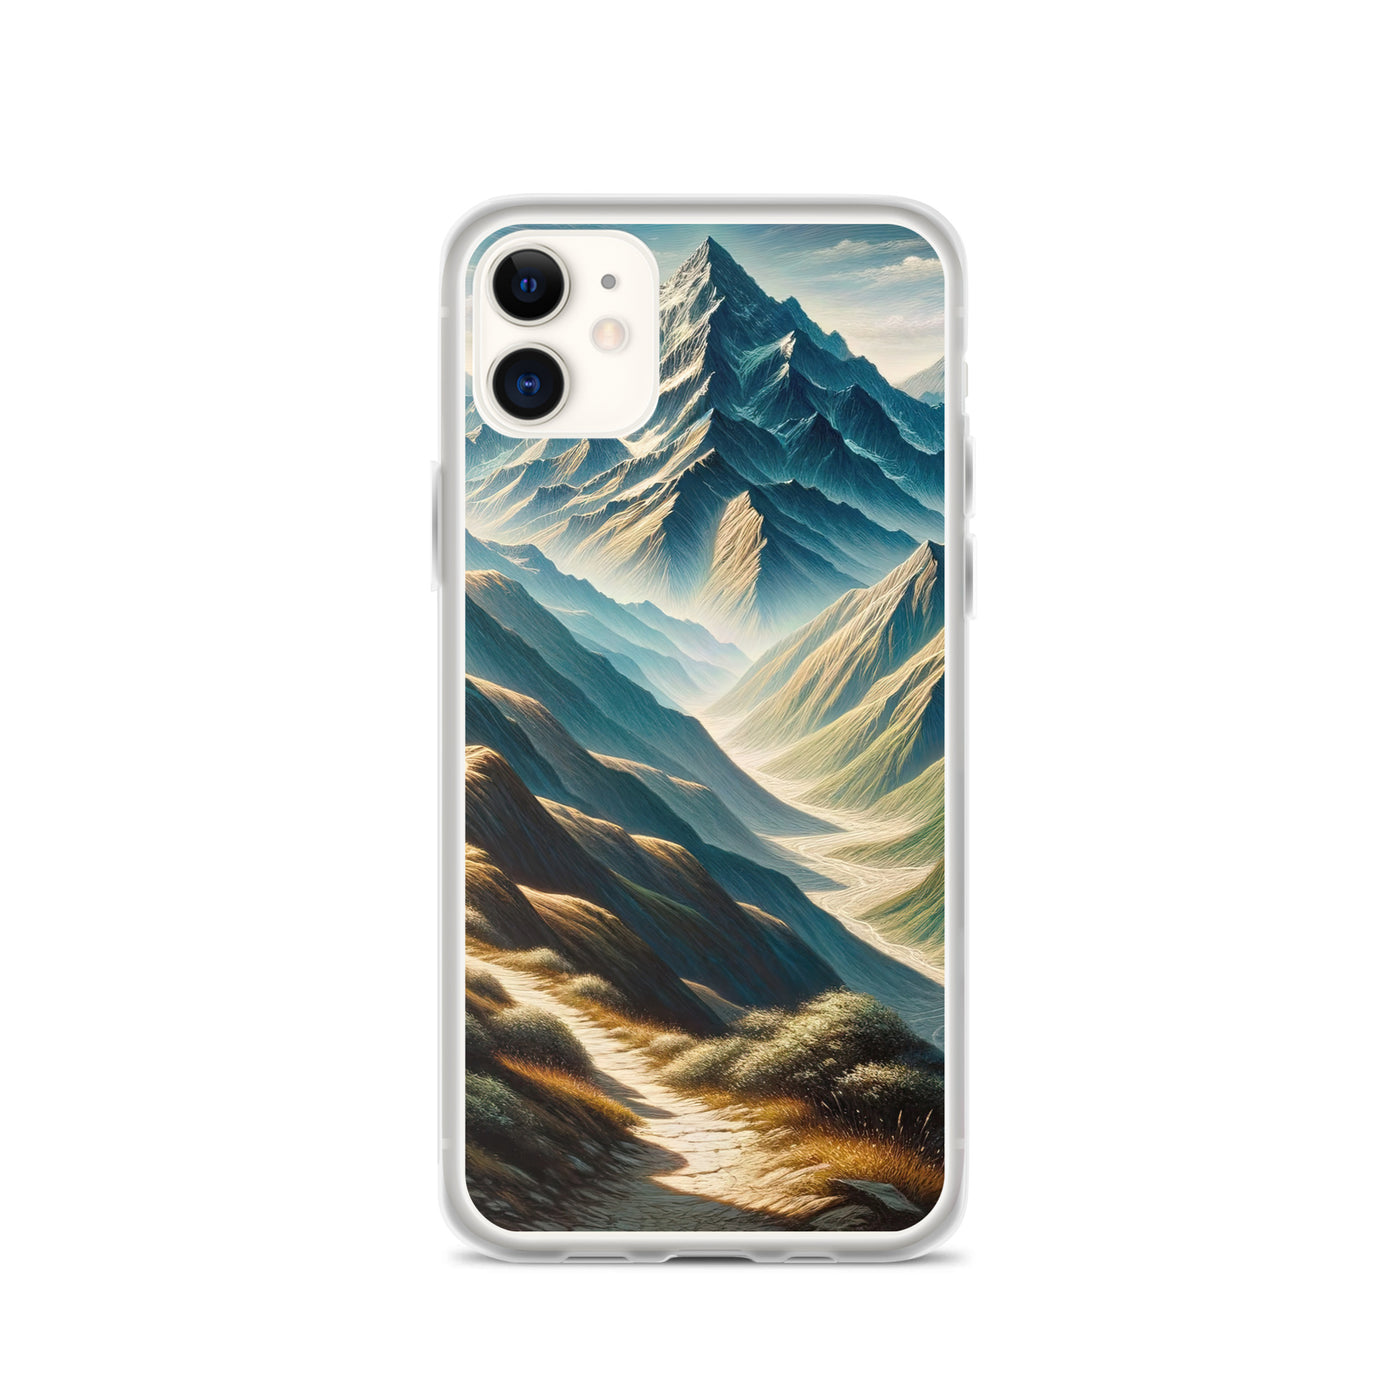 Berglandschaft: Acrylgemälde mit hervorgehobenem Pfad - iPhone Schutzhülle (durchsichtig) berge xxx yyy zzz iPhone 11